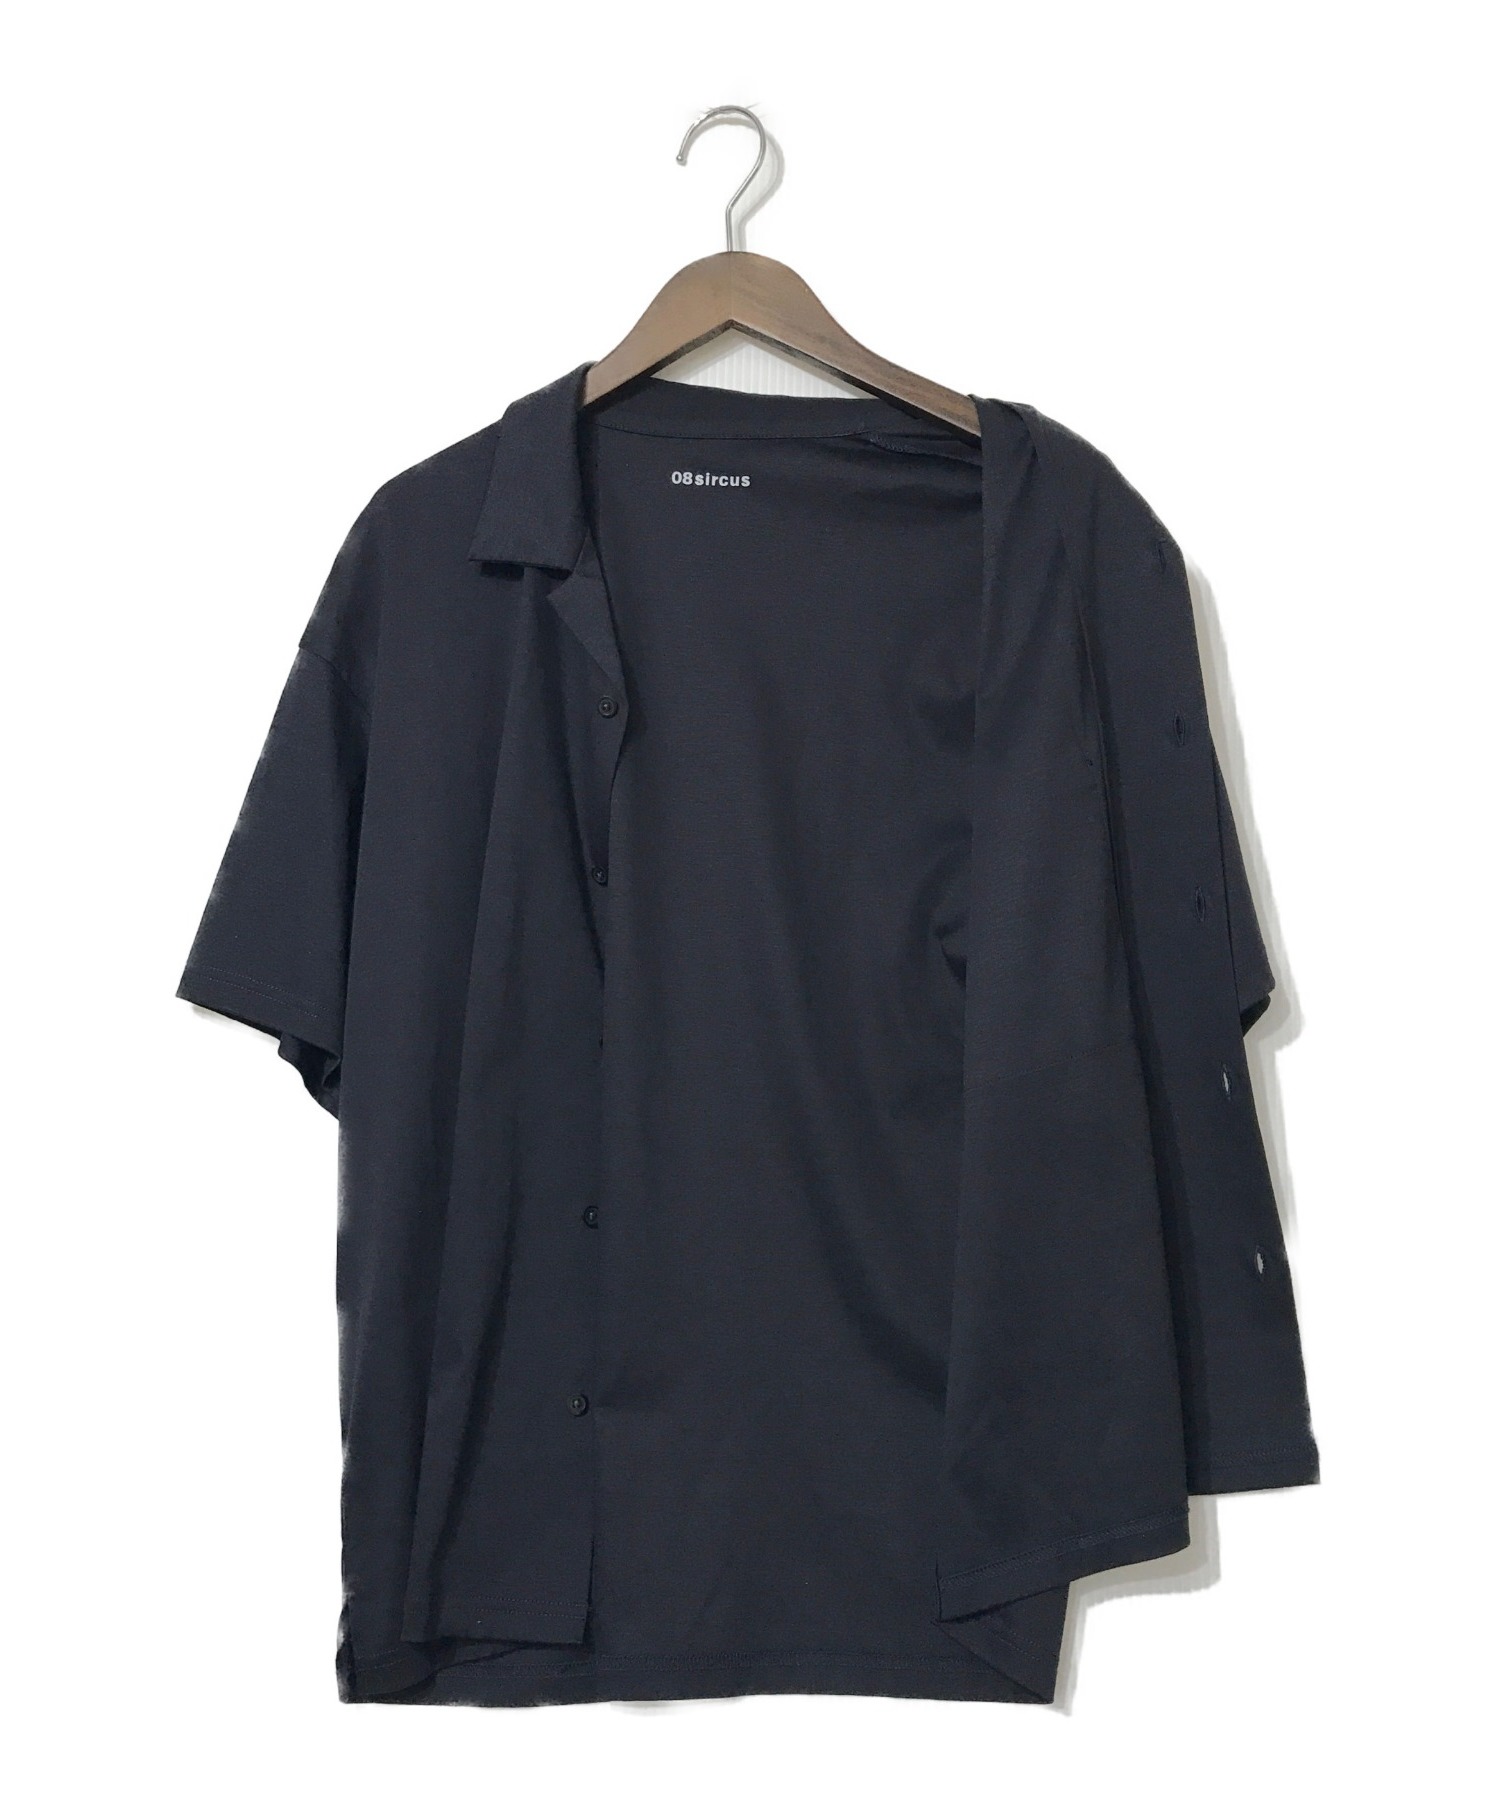 ゼロエイトサーカス 08SIRCUS シルキーオープンカラーシャツ 4 ブラック